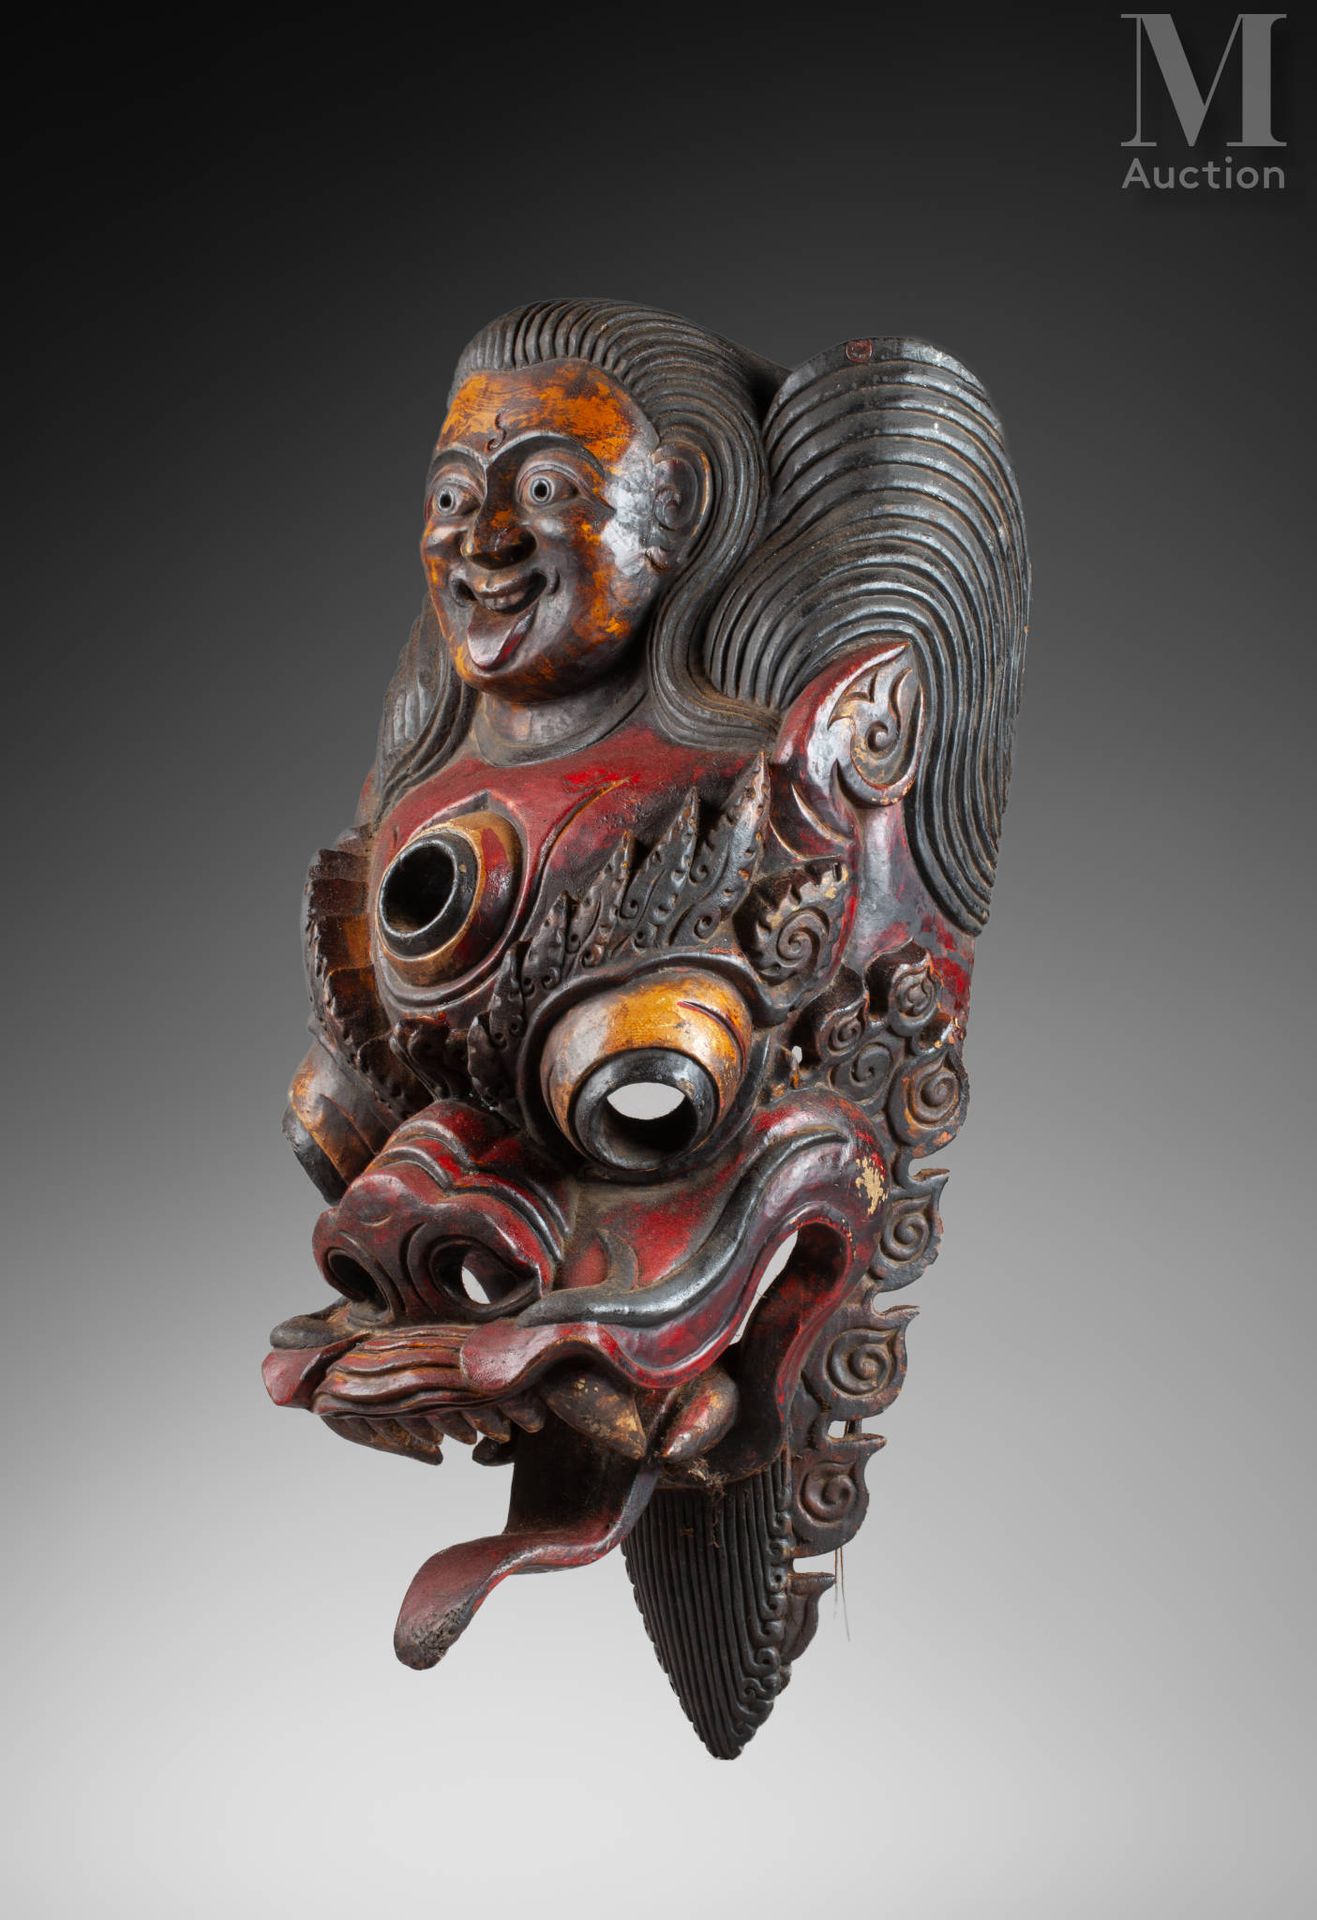 Masque décoratif de monastère 
Bois polychrome, vendu en l’état
Népal
60 cm